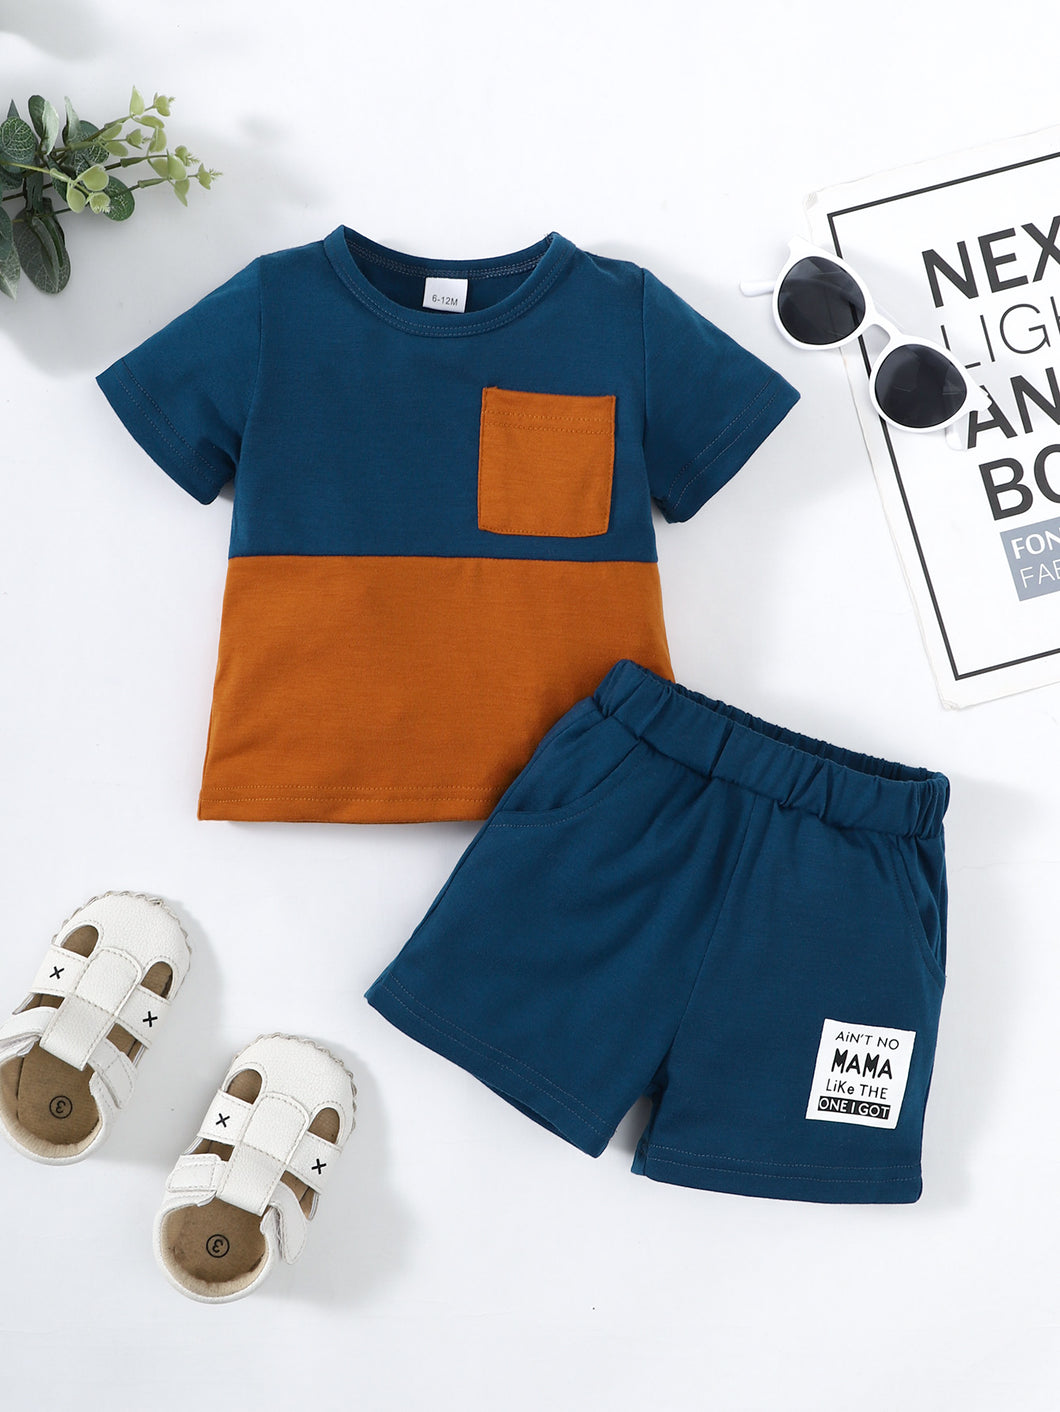 Boys Color Block Tee Shirt and Shorts Set